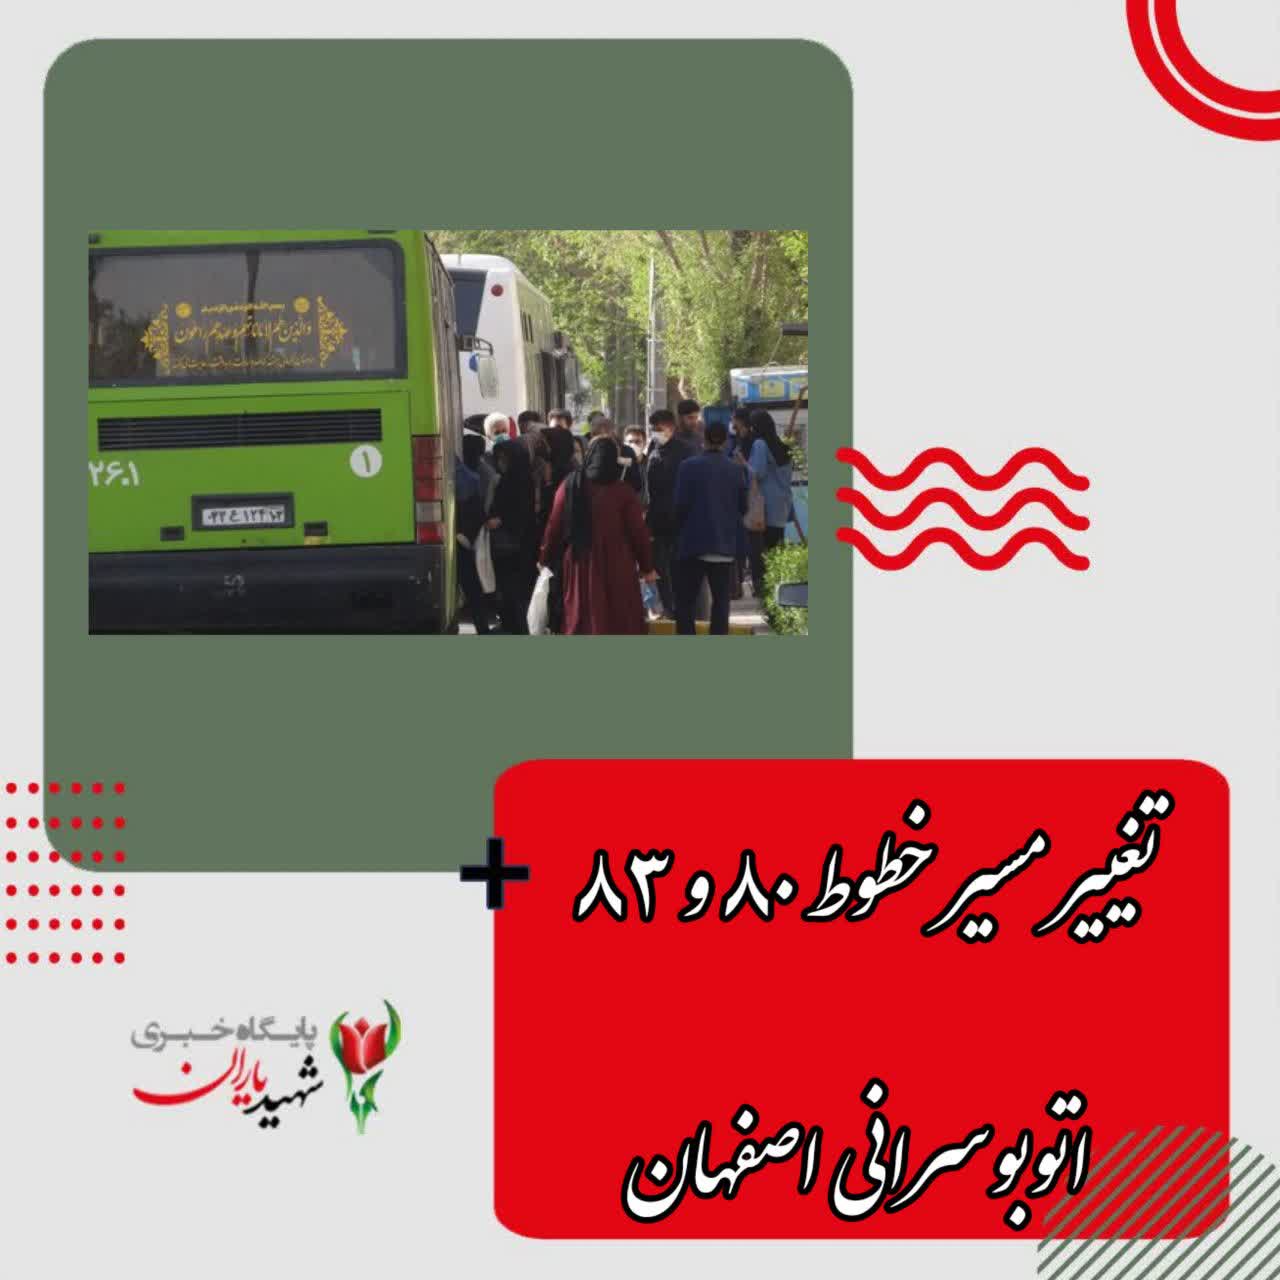 سخنگوی شرکت واحد اتوبوسرانی اصفهان و حومه خبر داد: